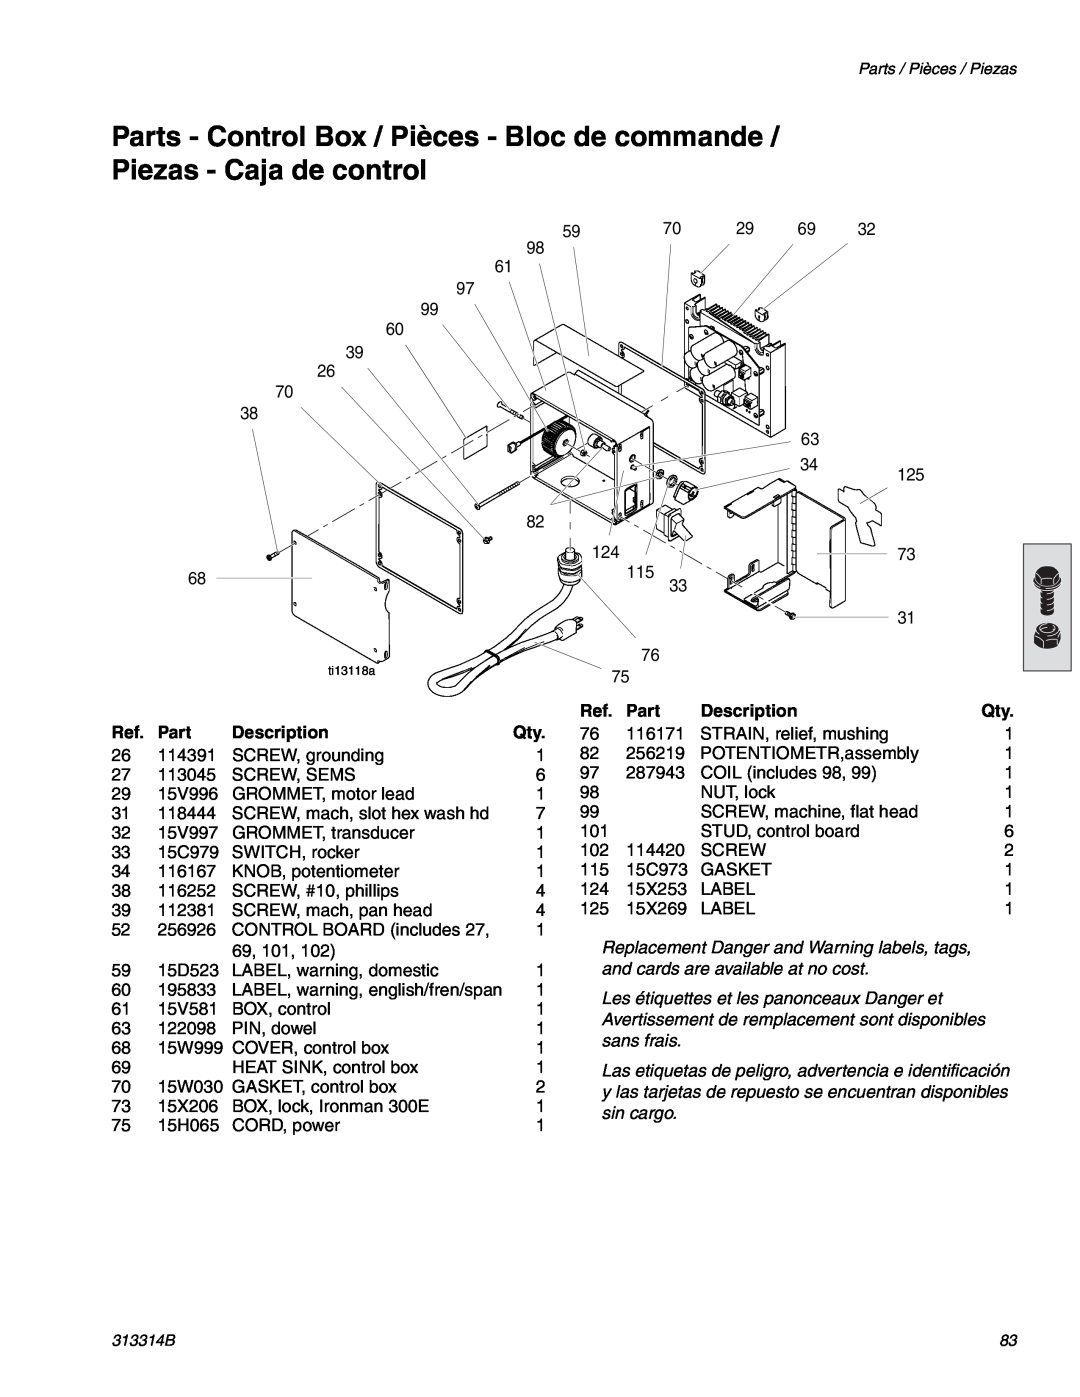 Graco Inc 300E, 313314B Parts - Control Box / Pièces - Bloc de commande, Piezas - Caja de control, Description 